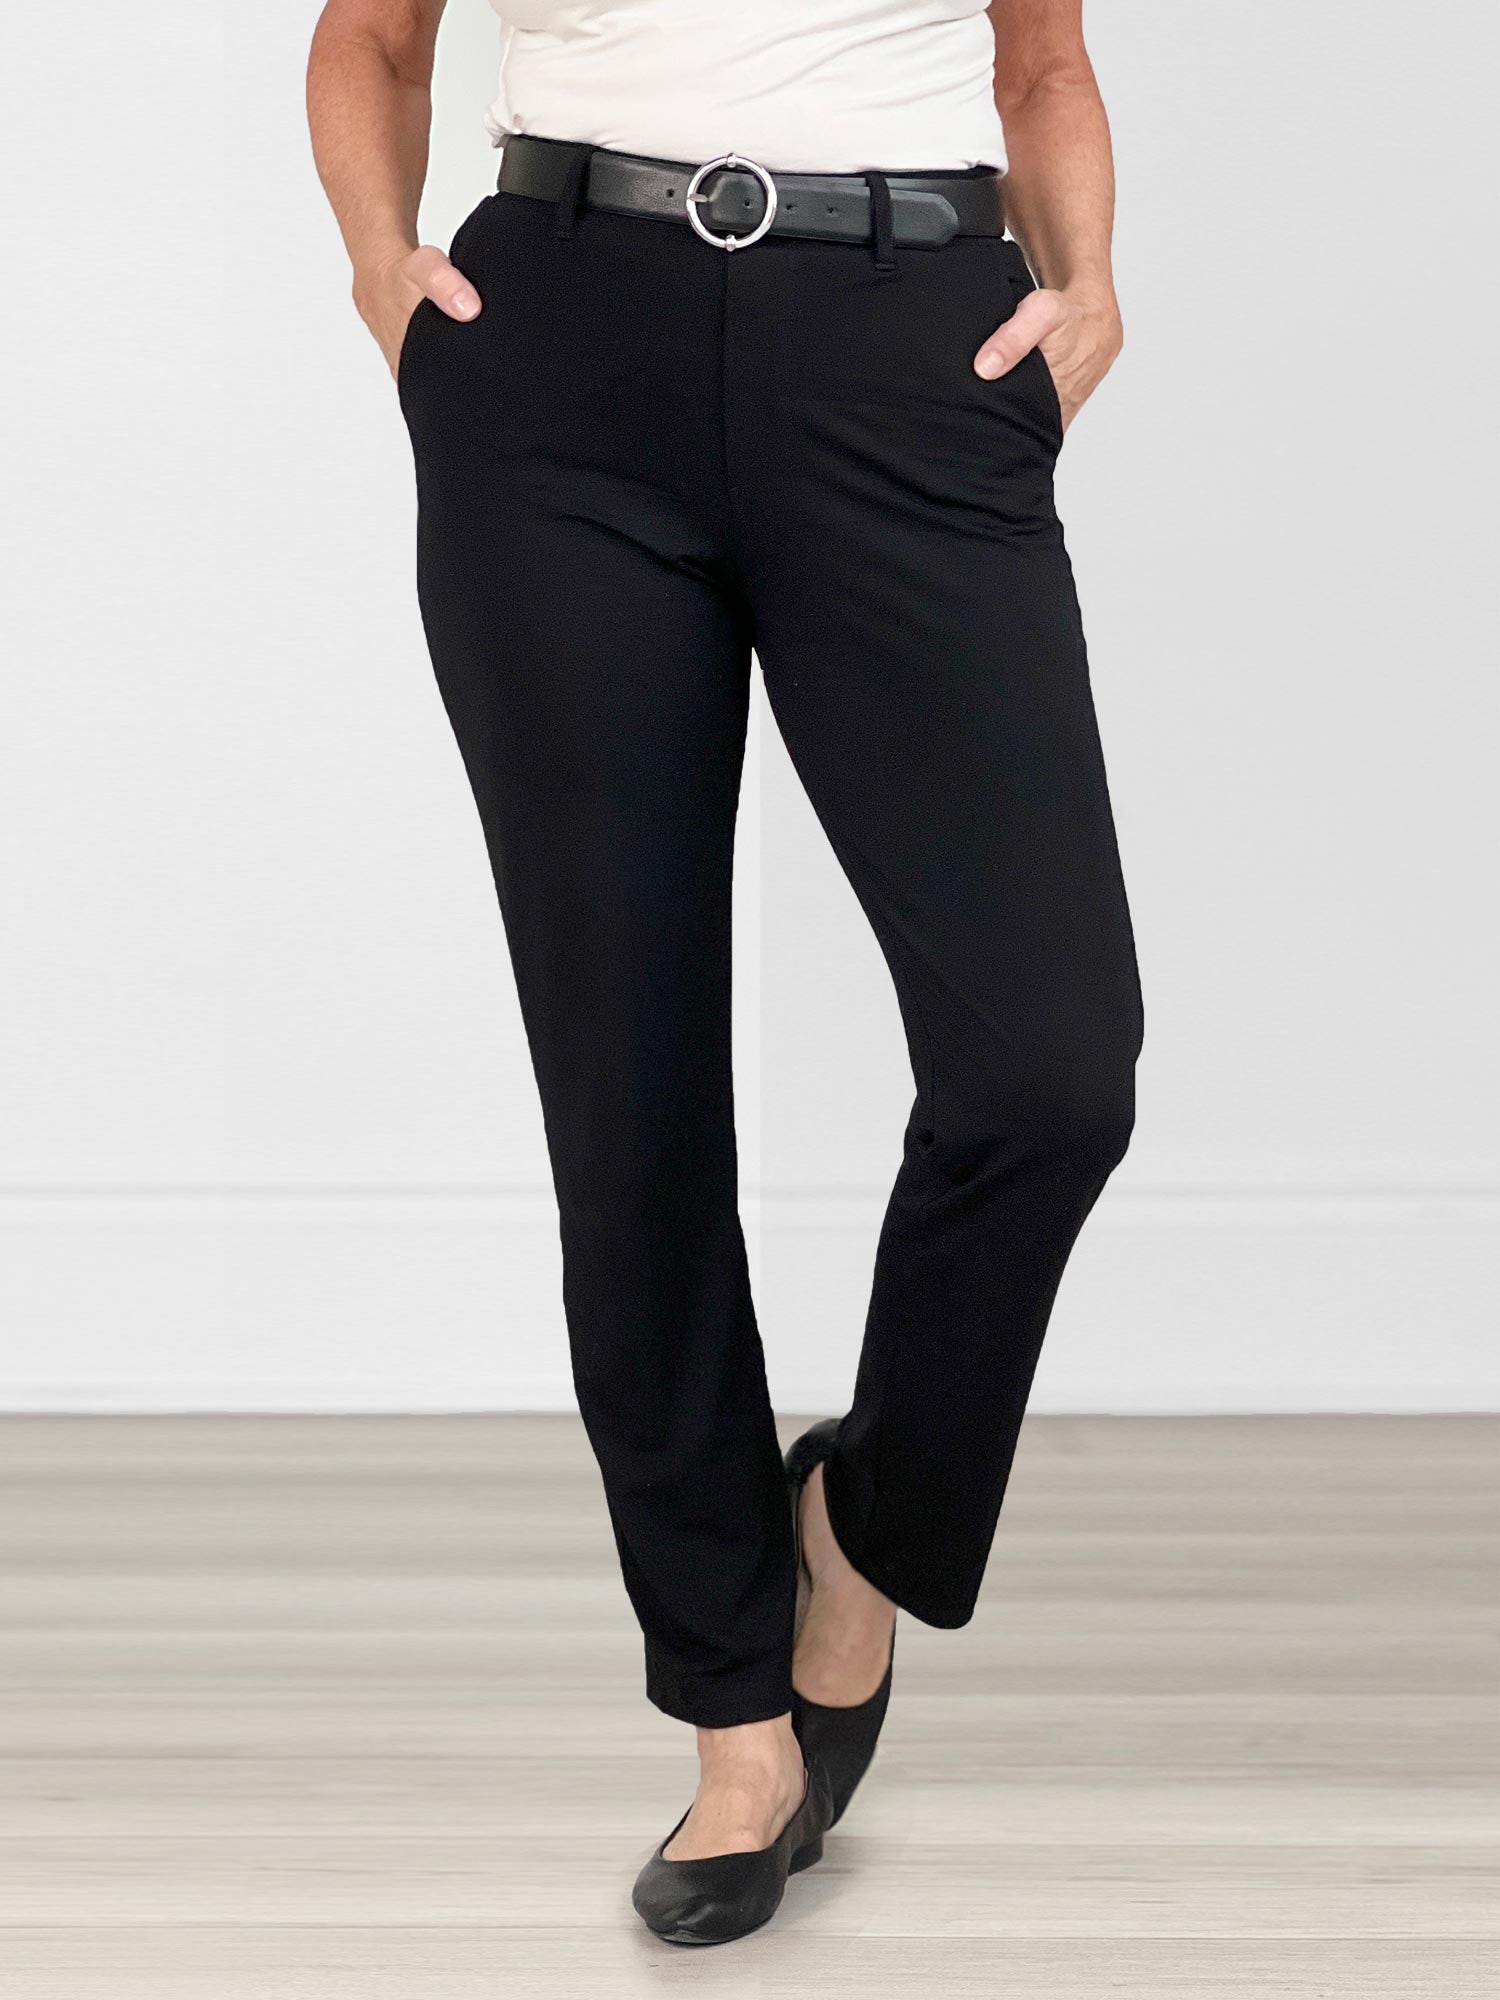 Tie waist flowy pant, Icône, Shop Women%u2019s Wide-Leg Pants Online in  Canada